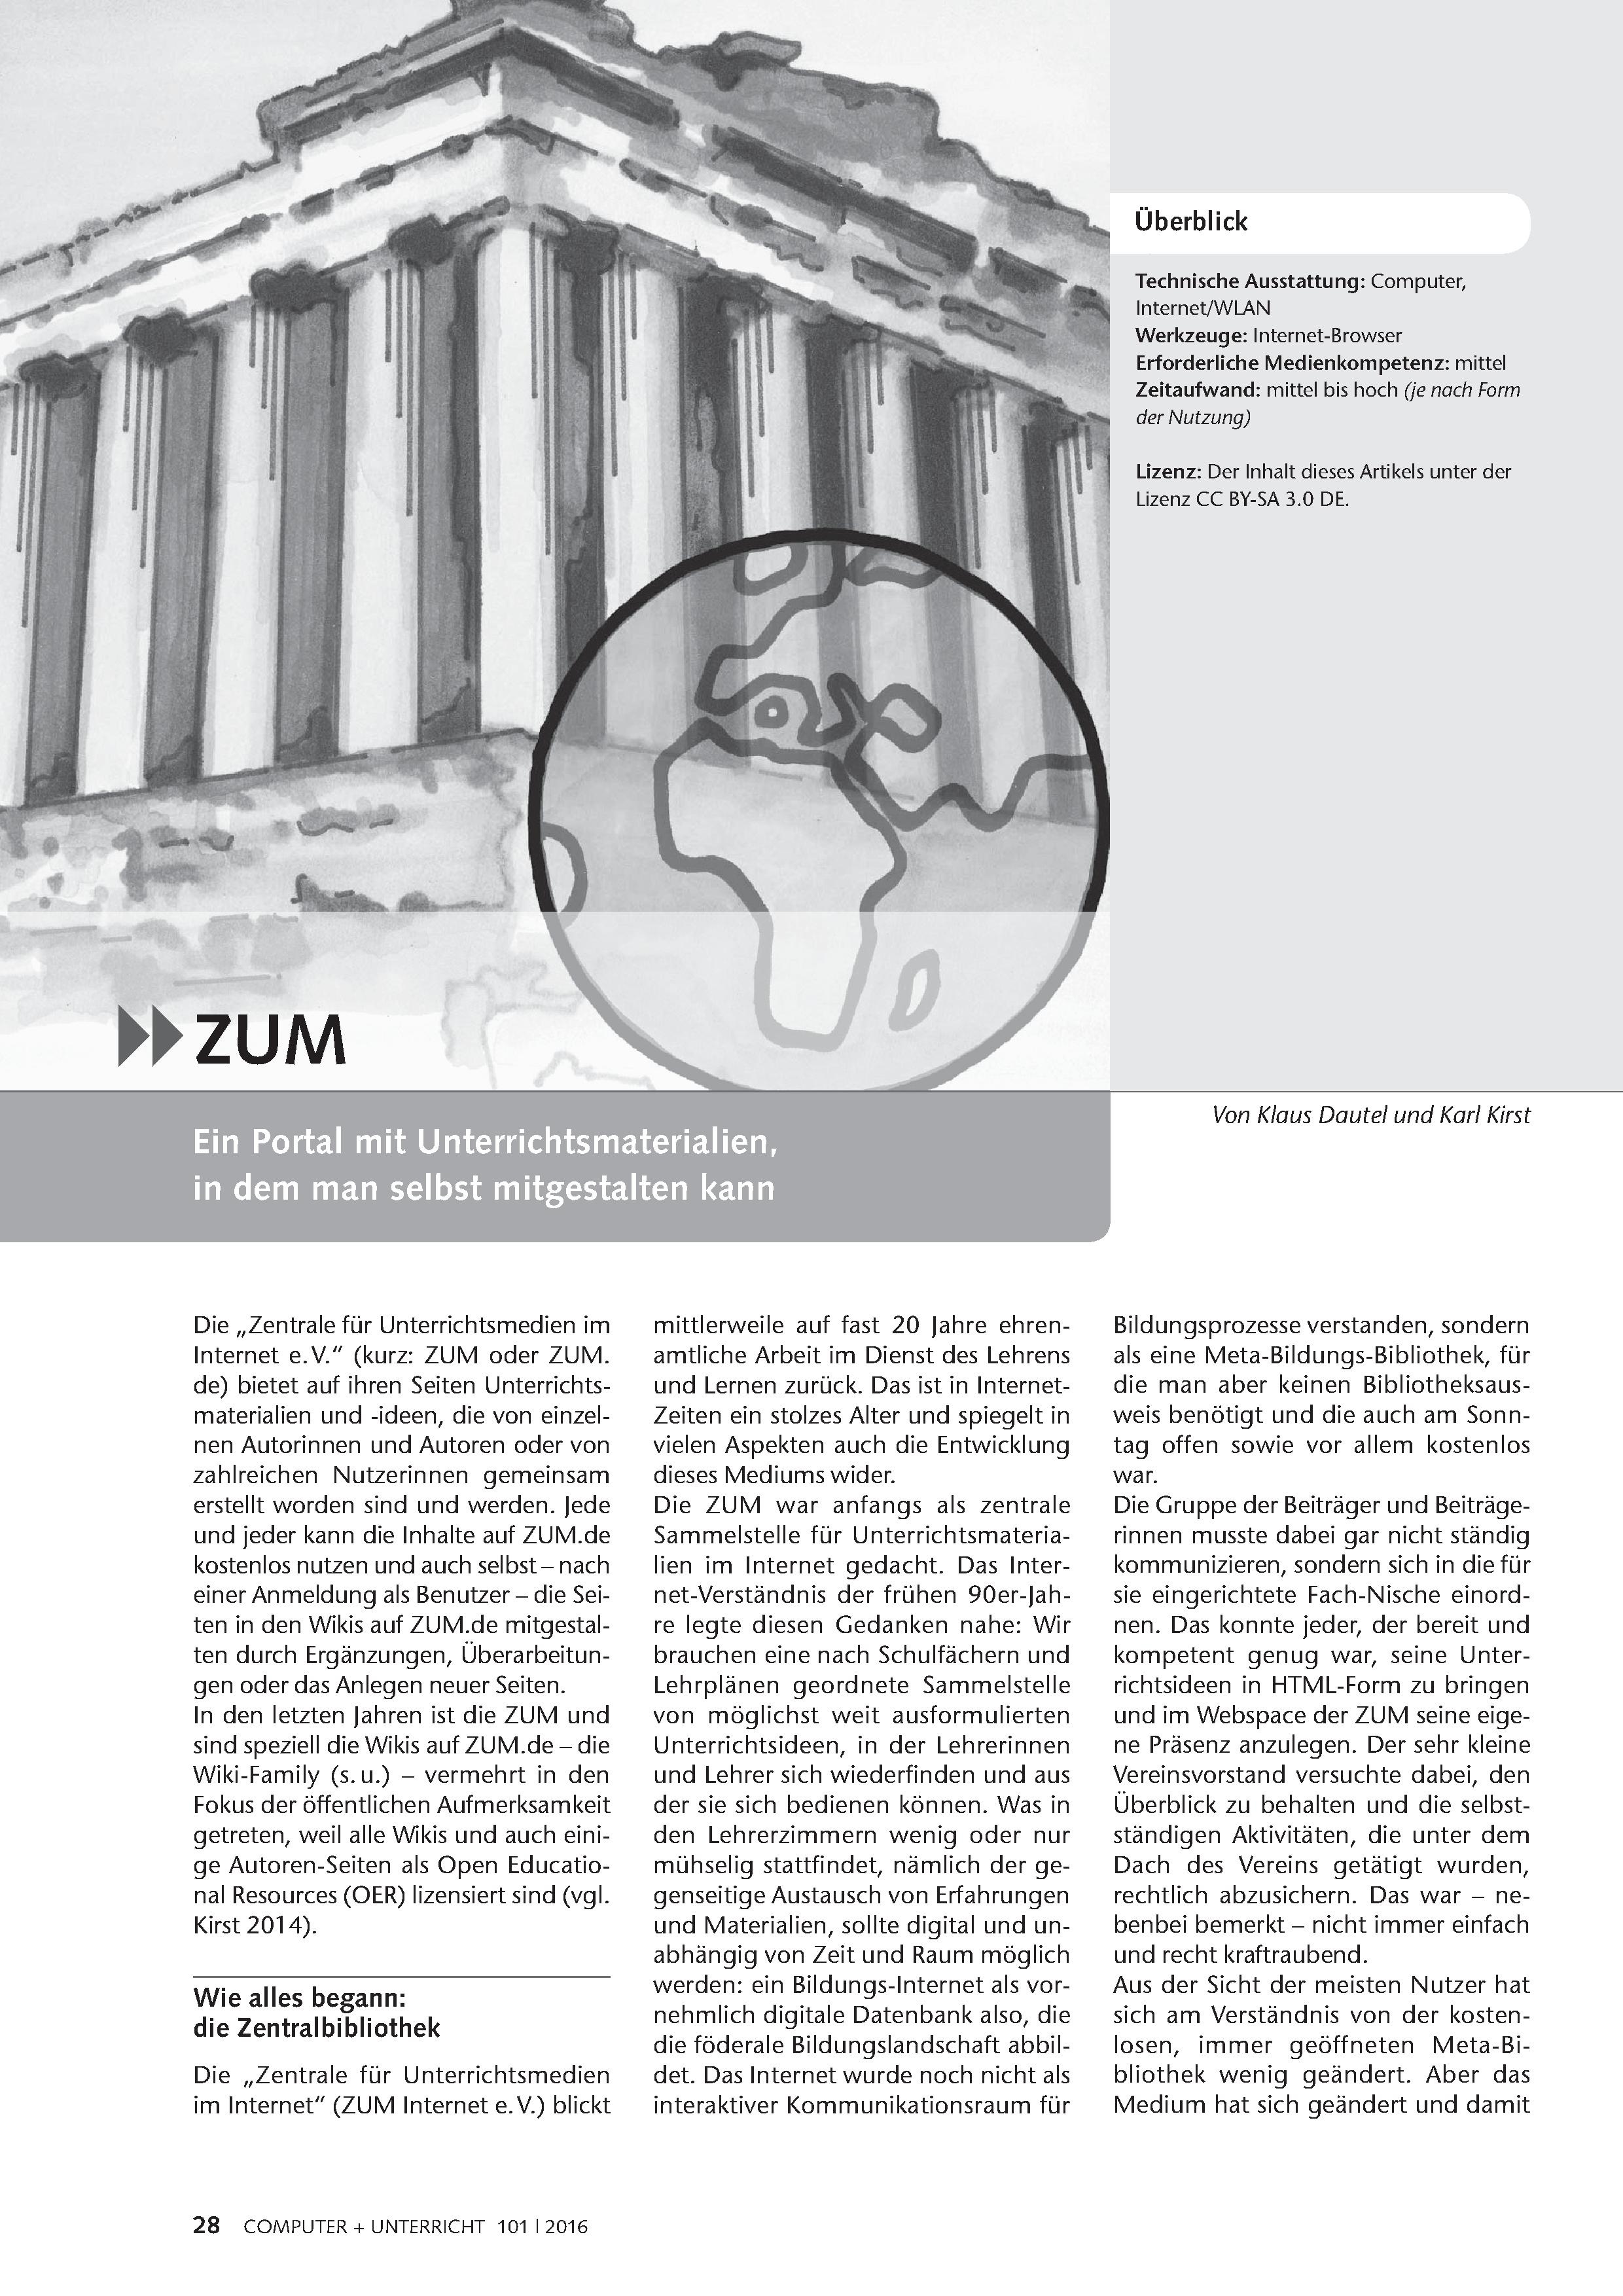 ZUM - Ein Portal mit Unterrichtsmaterialien, die man selbst mitgestalten kann